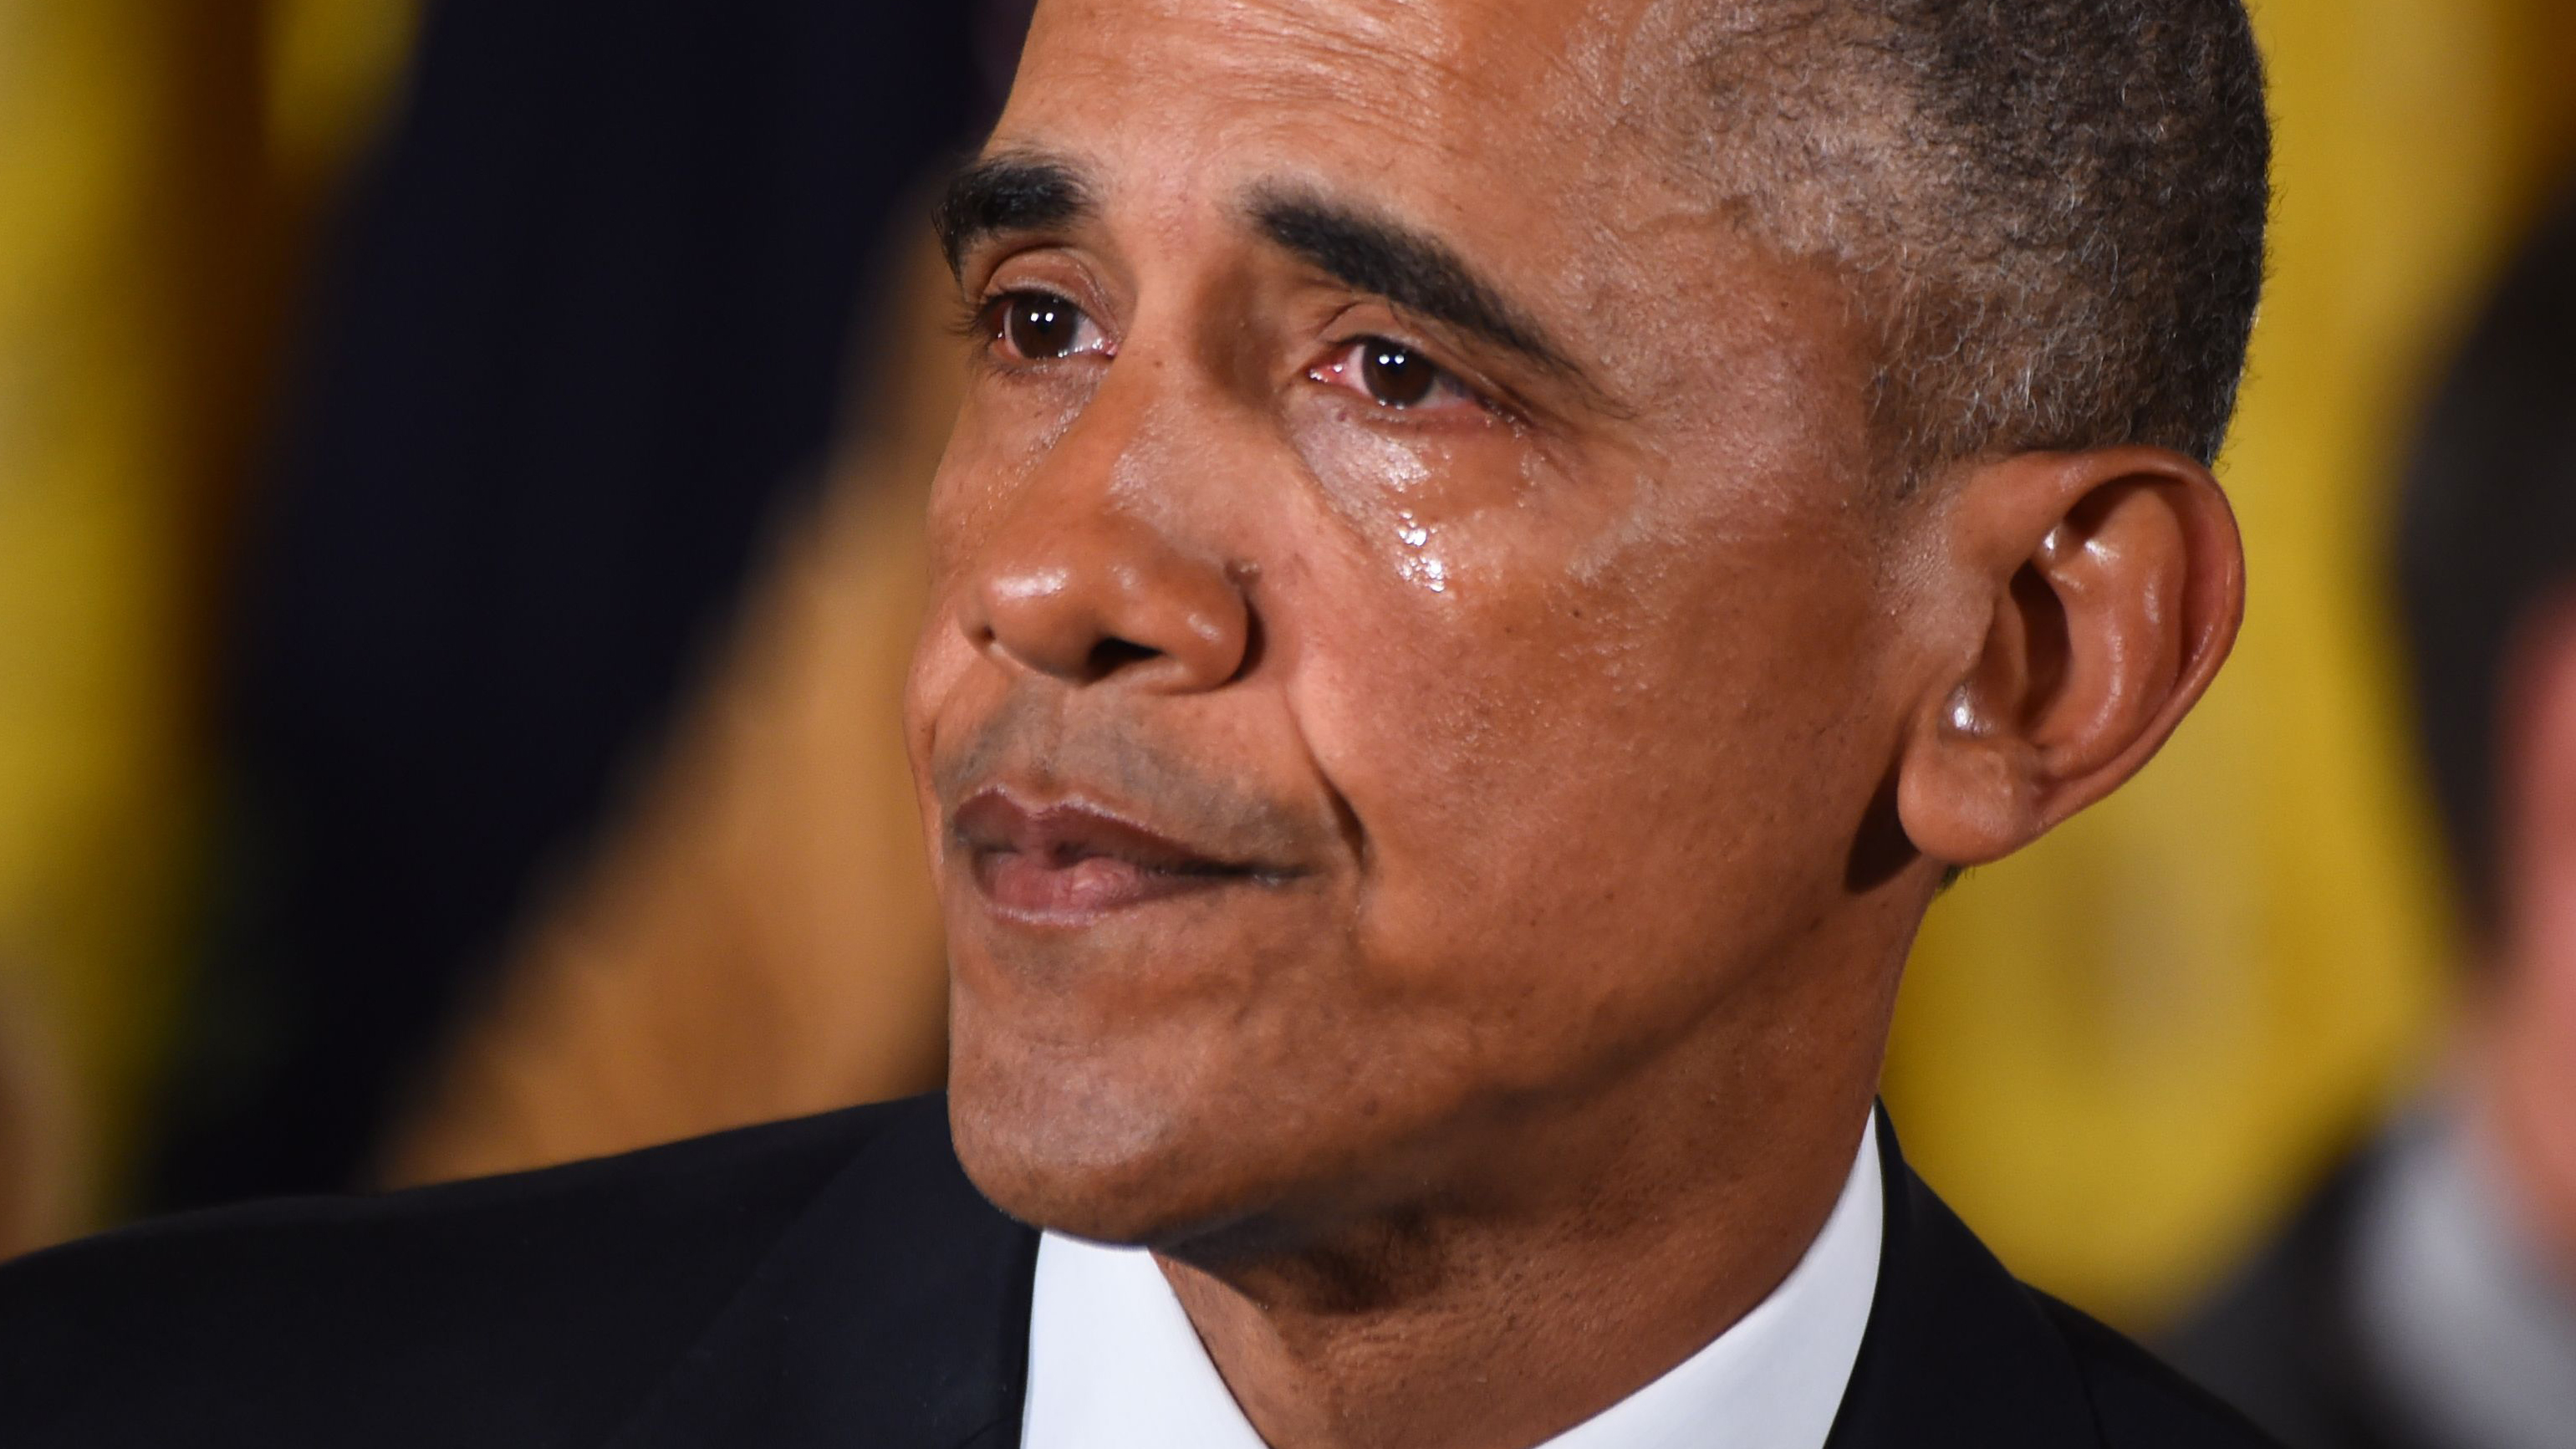 Why Obama's tears are so revolutionary | CNN Politics